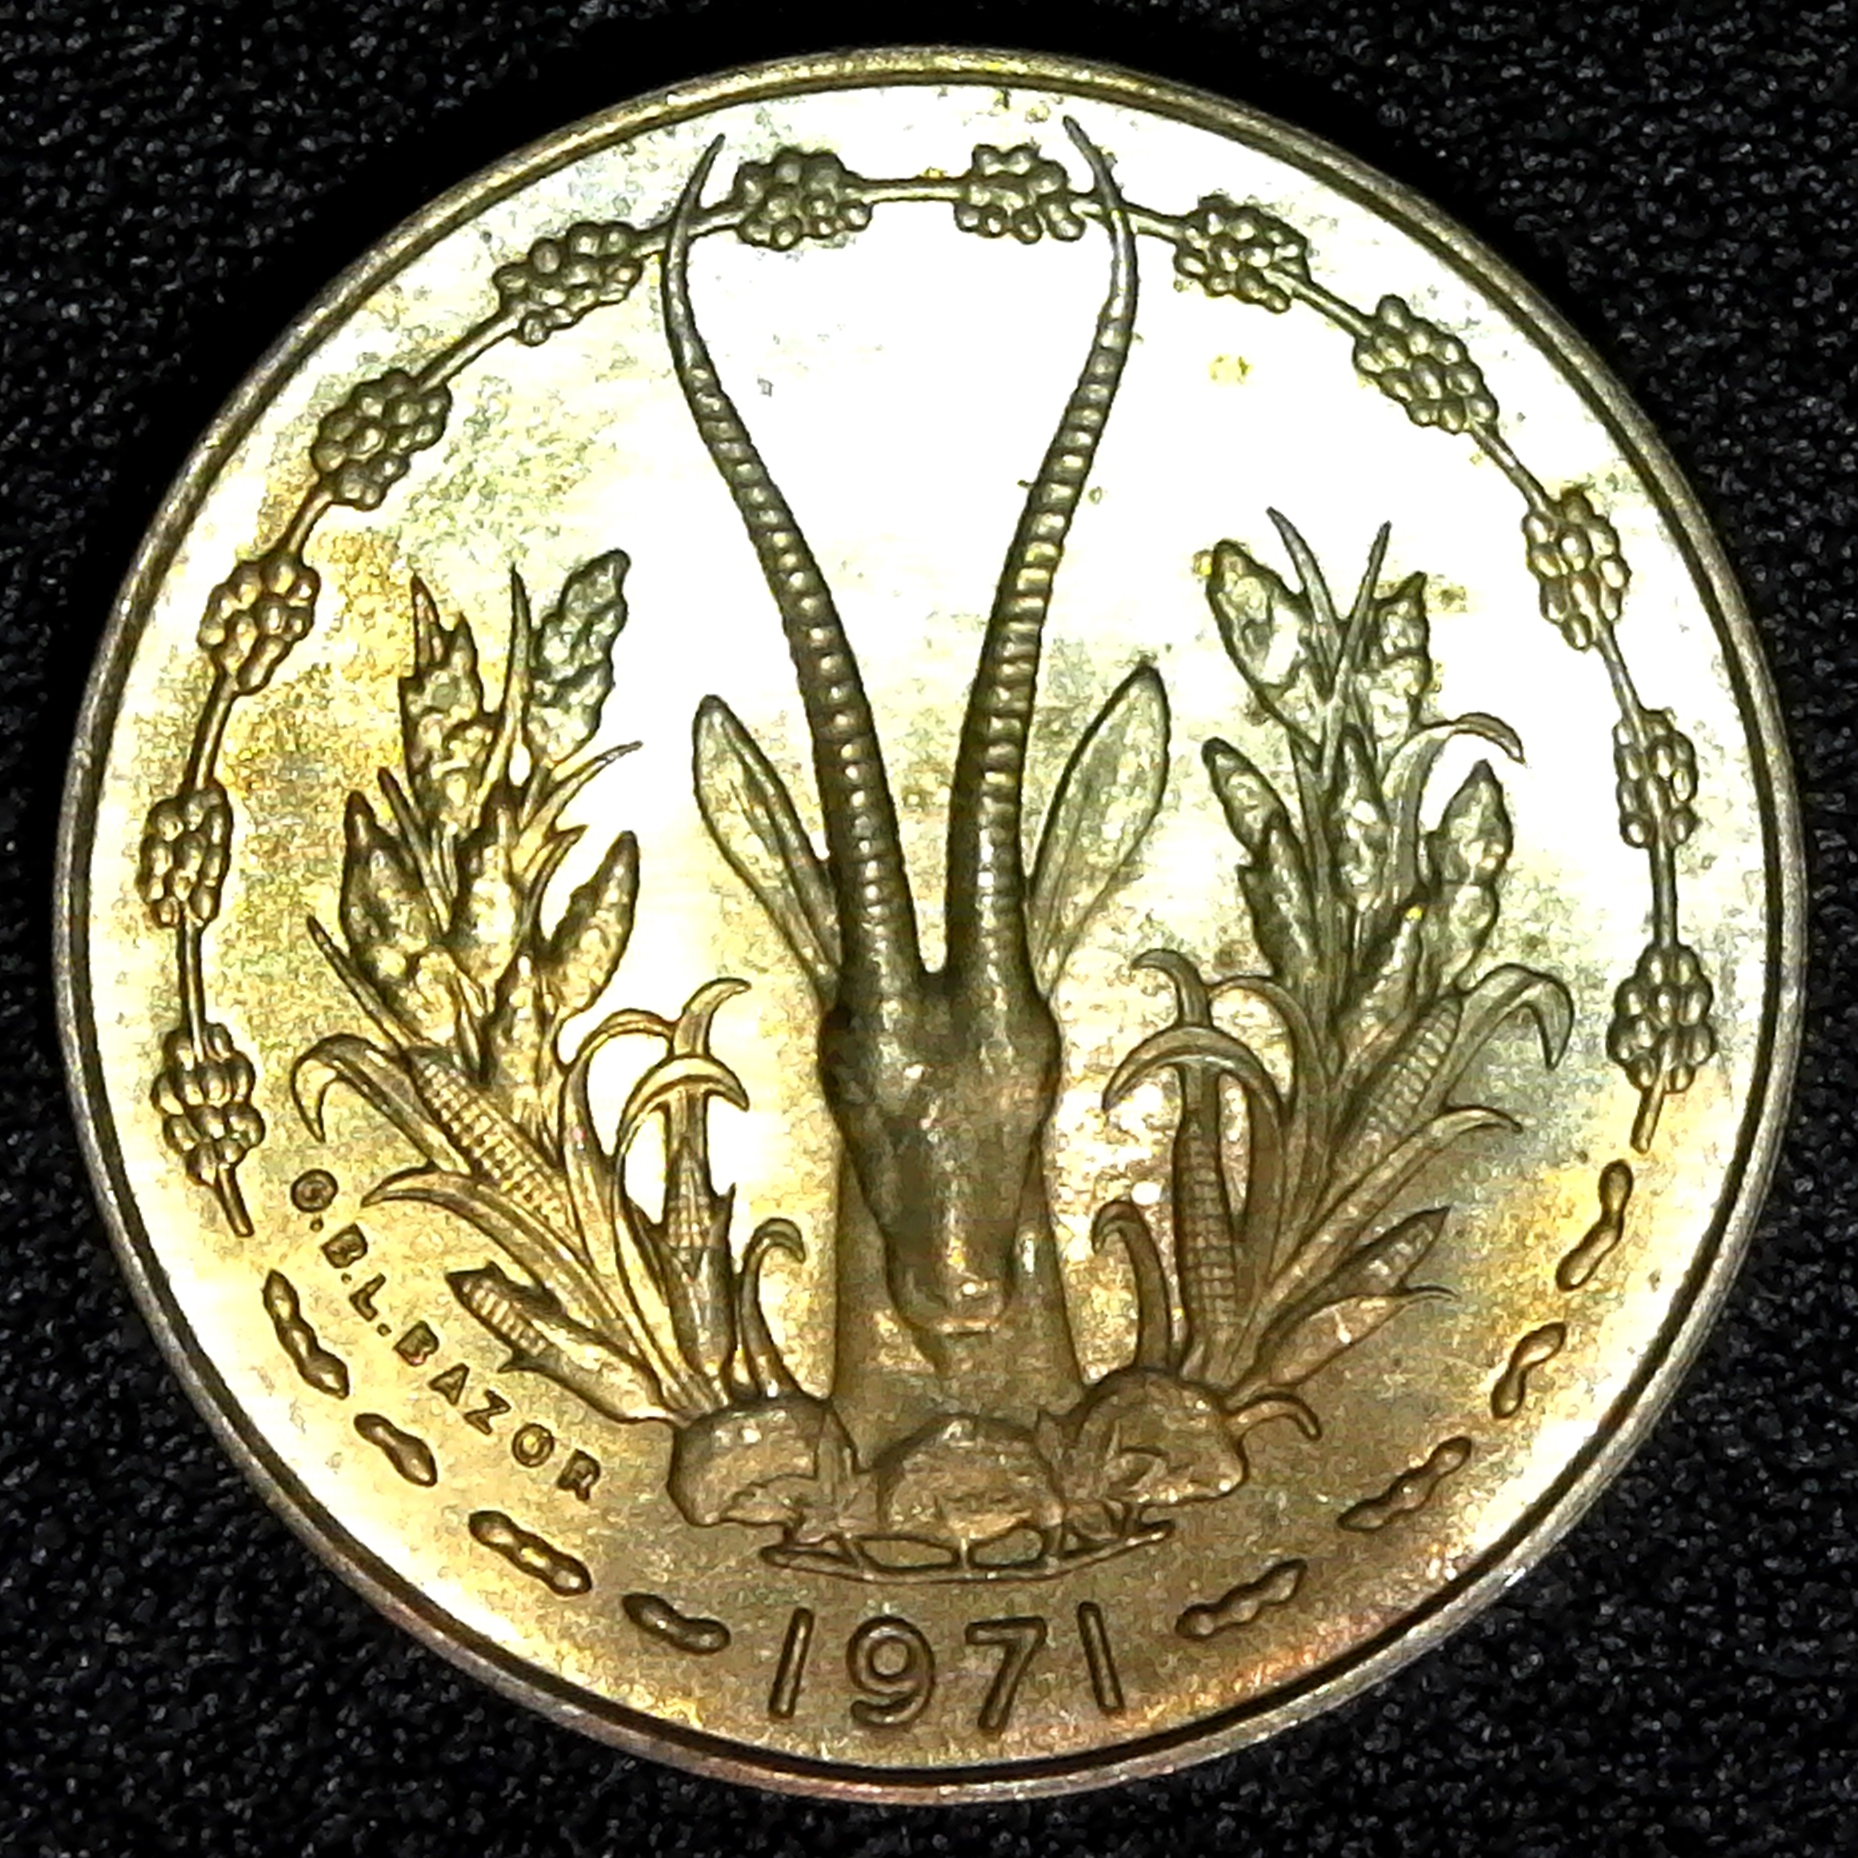 West African States 10 Francs 1971 rev.jpg